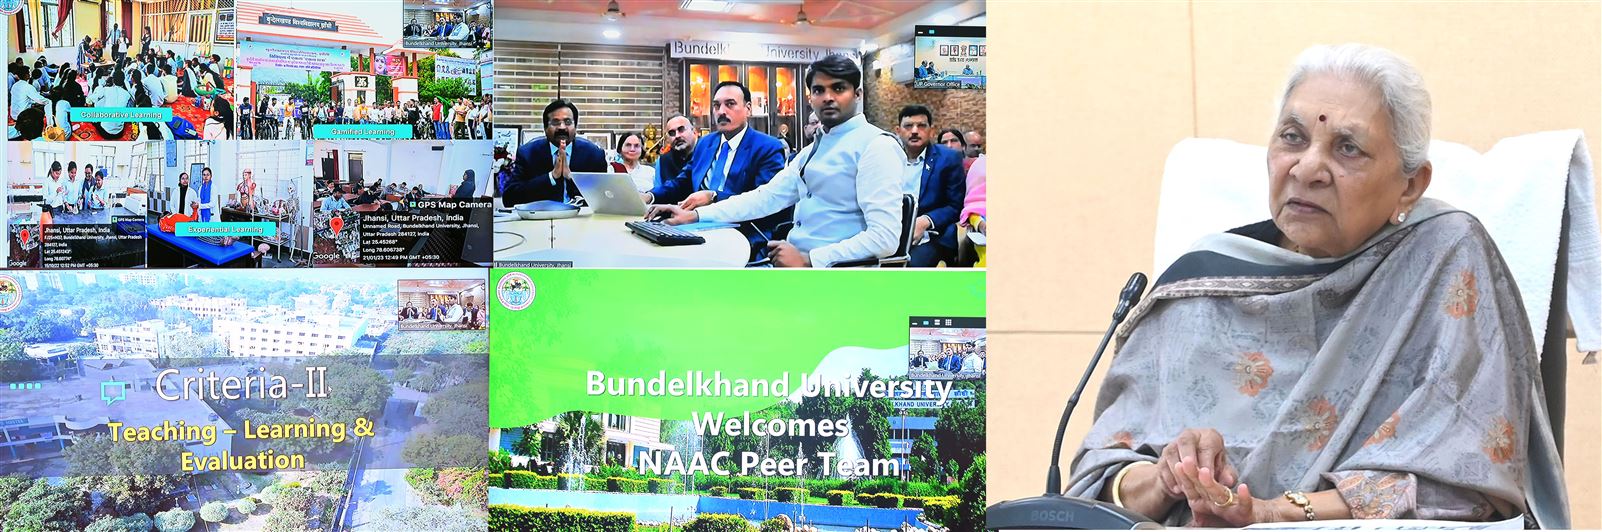 Governor virtually reviewed the presentation for peer team for NAAC grading of Bundelkhand University, Jhansi./राज्यपाल ने बुंदेलखण्ड विश्वविद्यालय, झांसी की नैक ग्रेडिंग हेतु पियर टीम के लिए प्रस्तुतिकरण की ऑनलाइन समीक्षा की